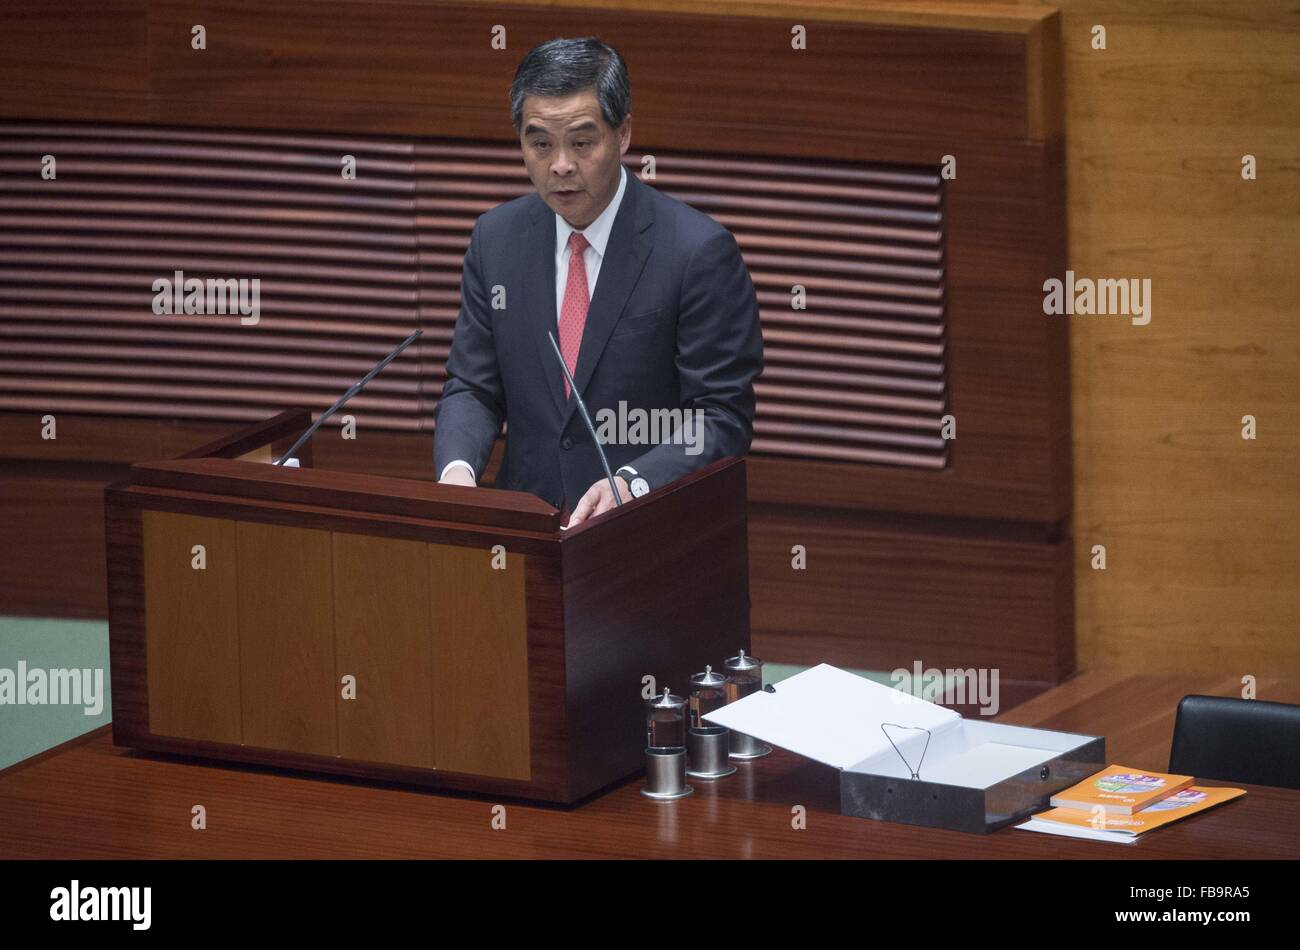 Hong Kong, China. 13th Jan, 2016. Hong Kong Chief Executive Leung Chun-ying delivers his annual policy address at the Legislative Council in Hong Kong, south China, Jan. 13, 2016. © Lui Siu Wai/Xinhua/Alamy Live News Stock Photo